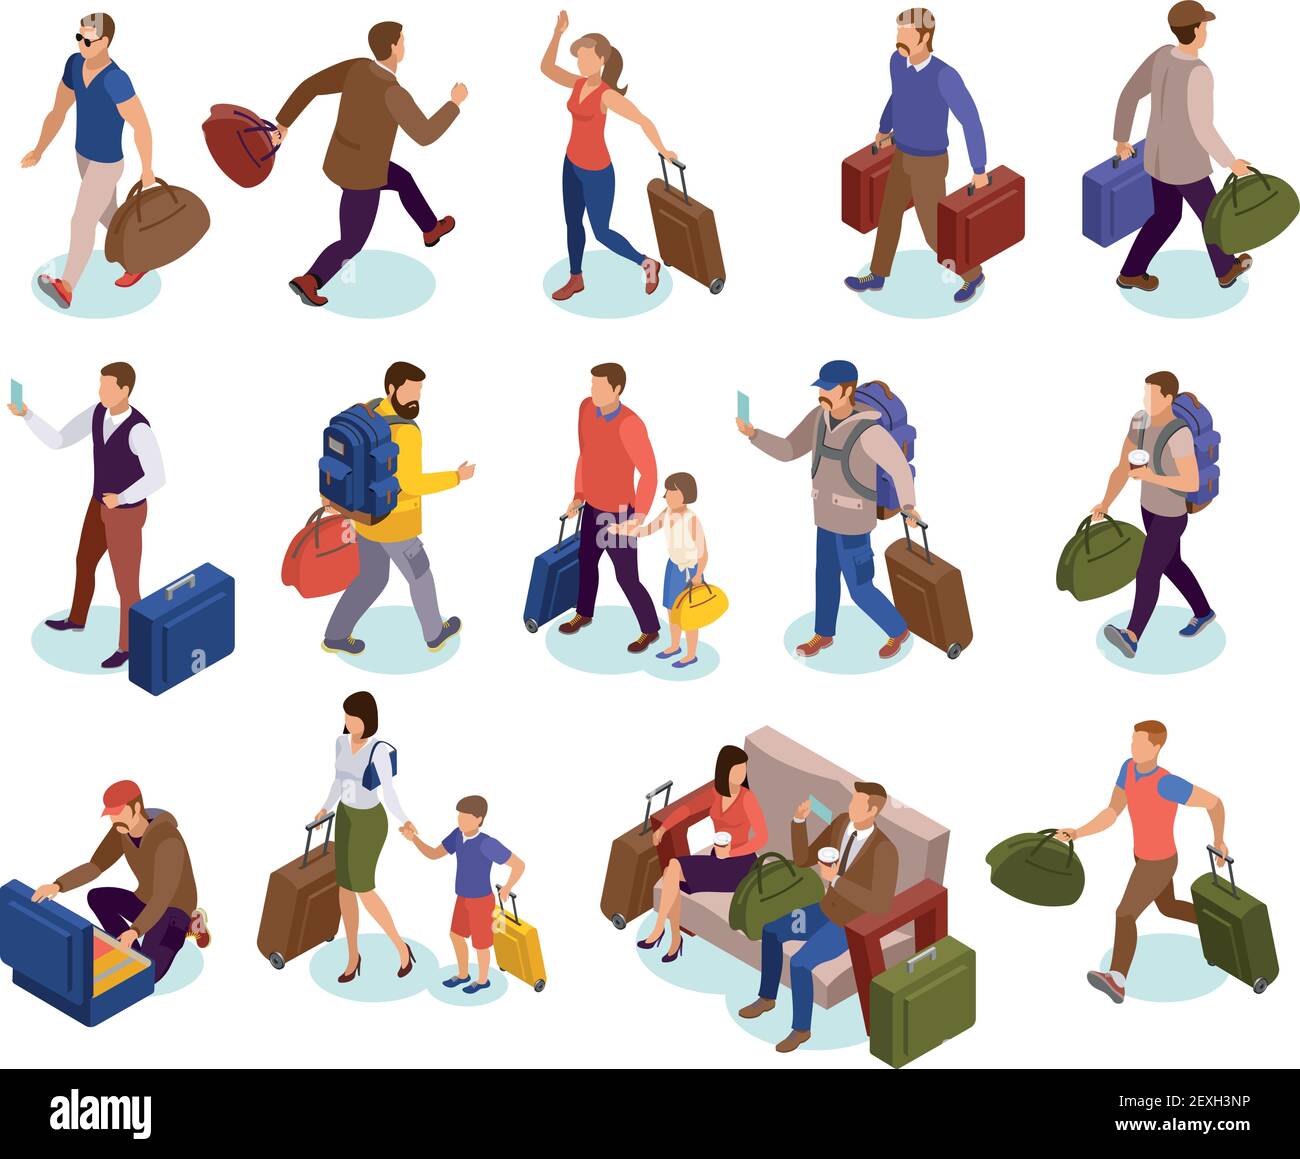 Viaggi persone icone isolate insieme di caratteri con i bagagli in attesa precipitandosi a terra incontrando i passeggeri in arrivo illustrazione vettoriale isometrica Illustrazione Vettoriale